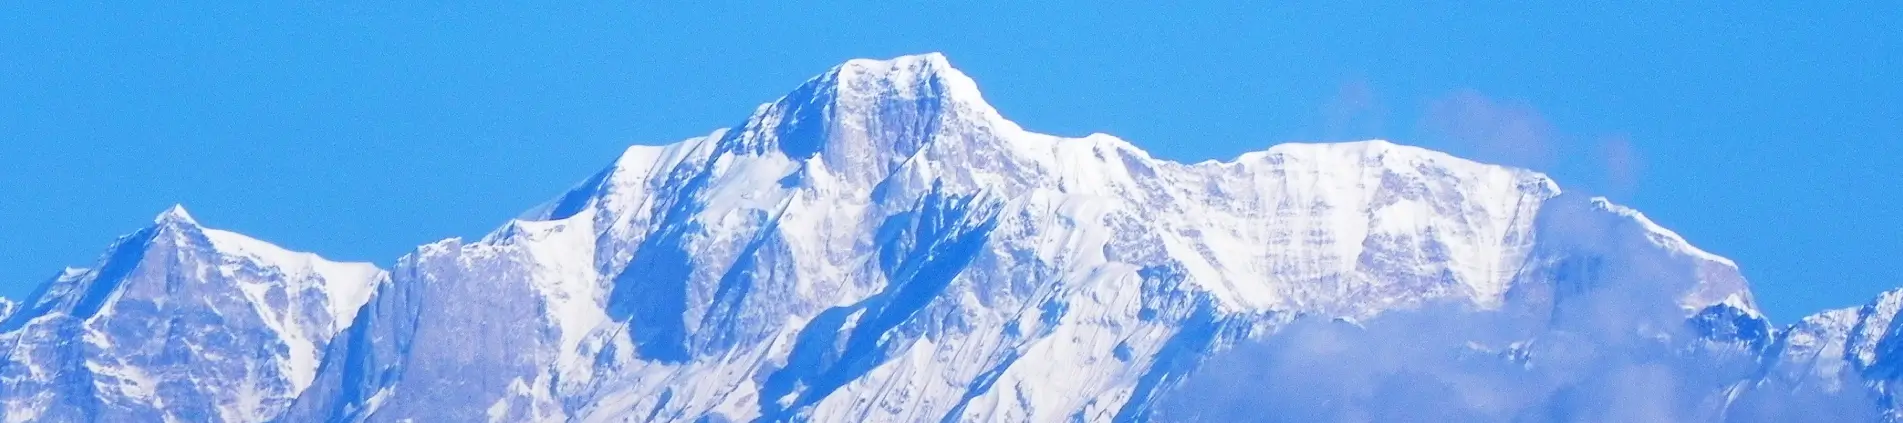 Kedar Dome Peak Climbing